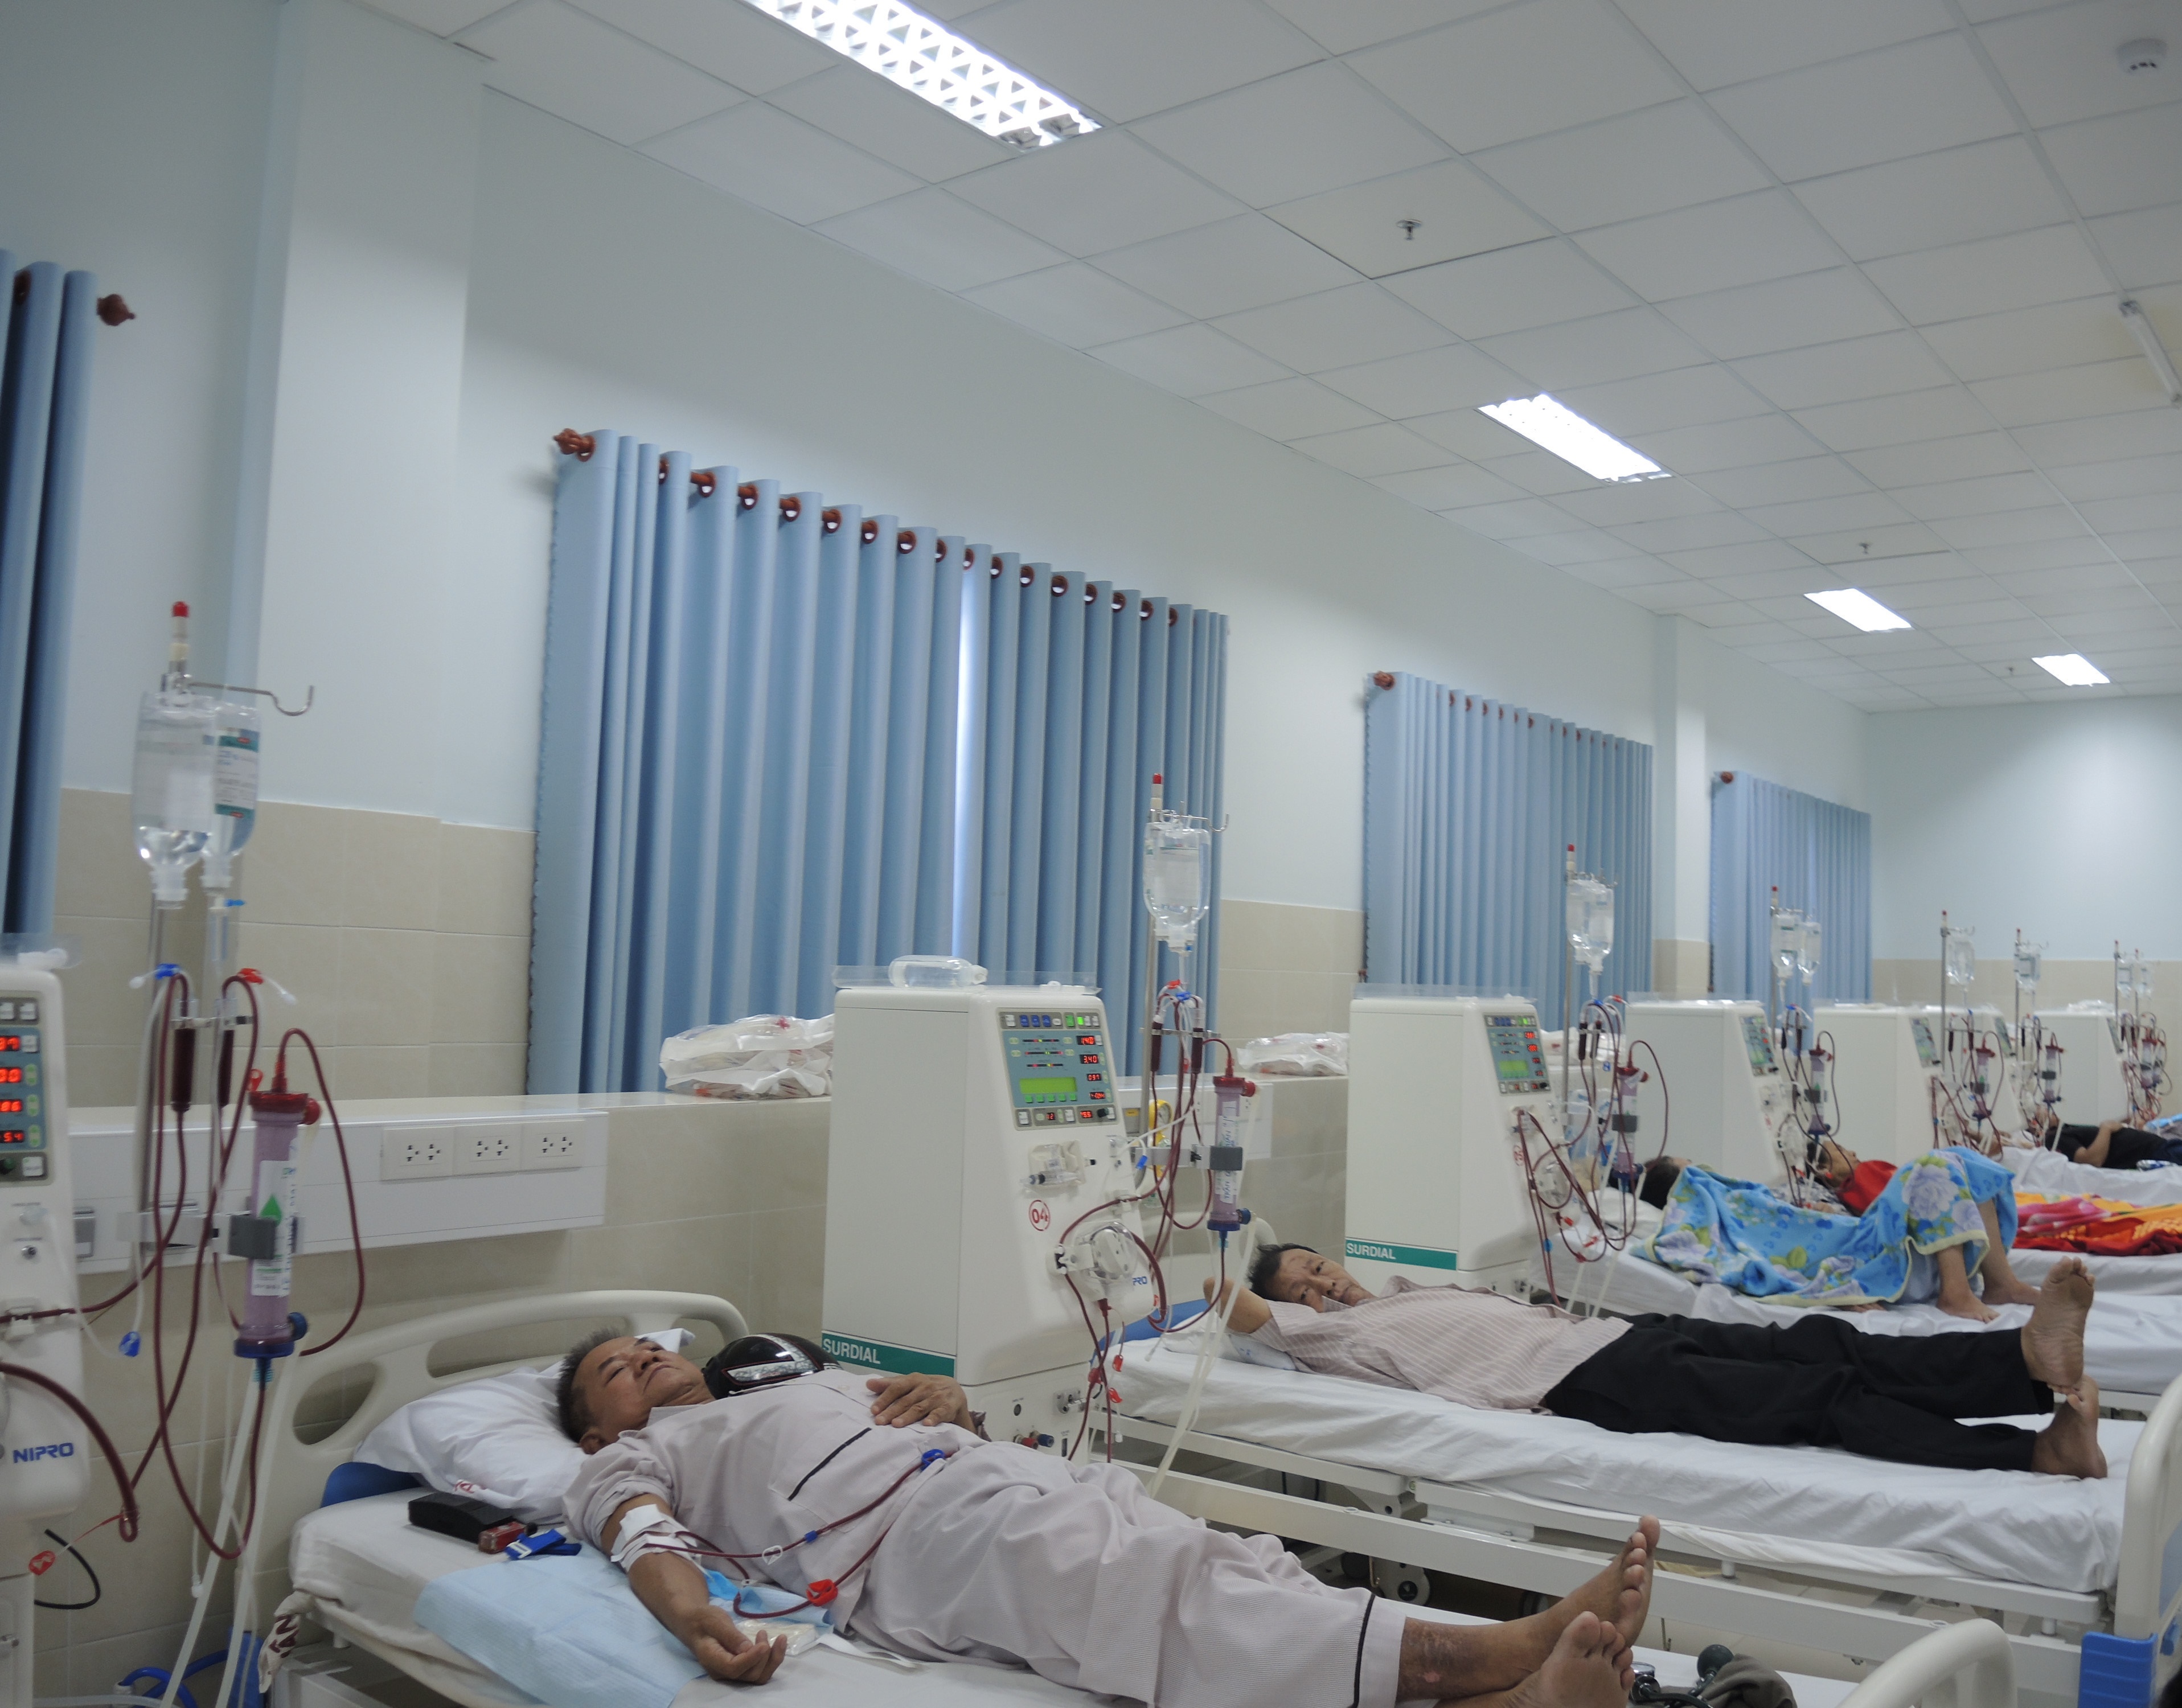 Các bệnh nhân còn lại tại BVĐK tỉnh Hòa Bình đang được tiếp tục điều trị theo phác đồ chung